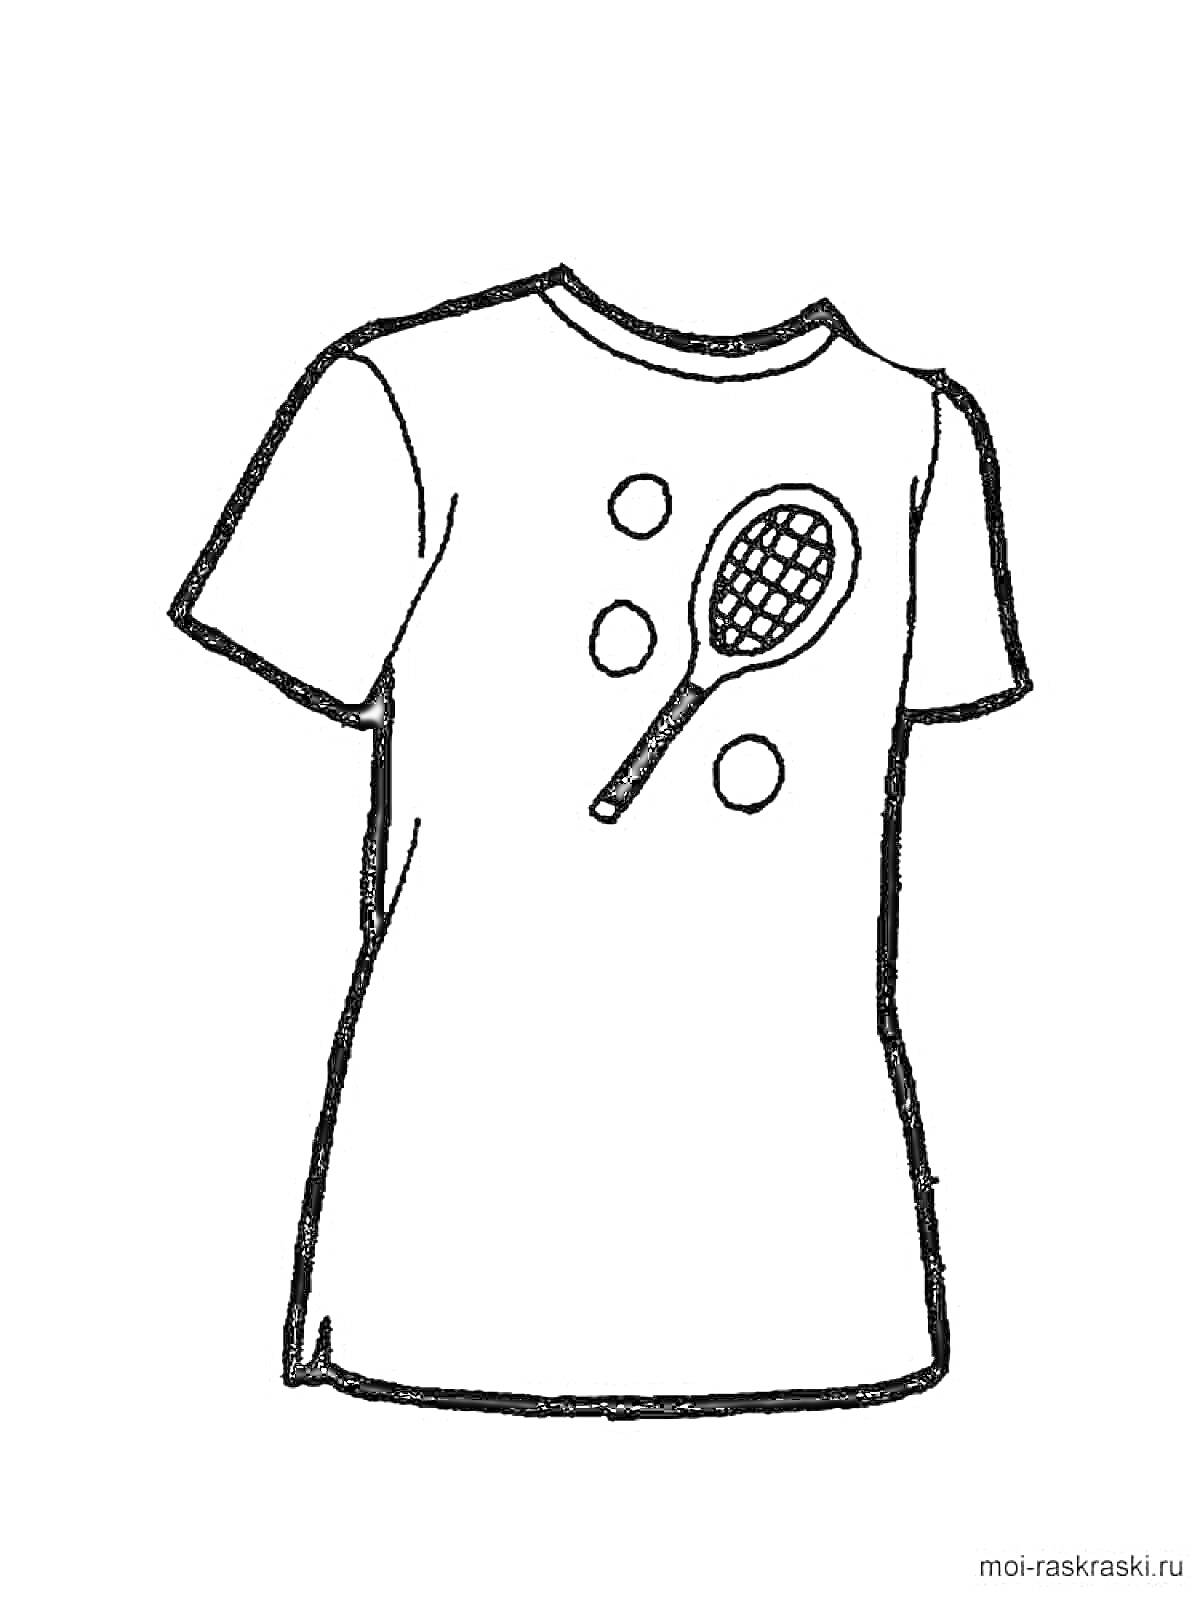 Раскраска Футболка с изображением теннисной ракетки и мячей